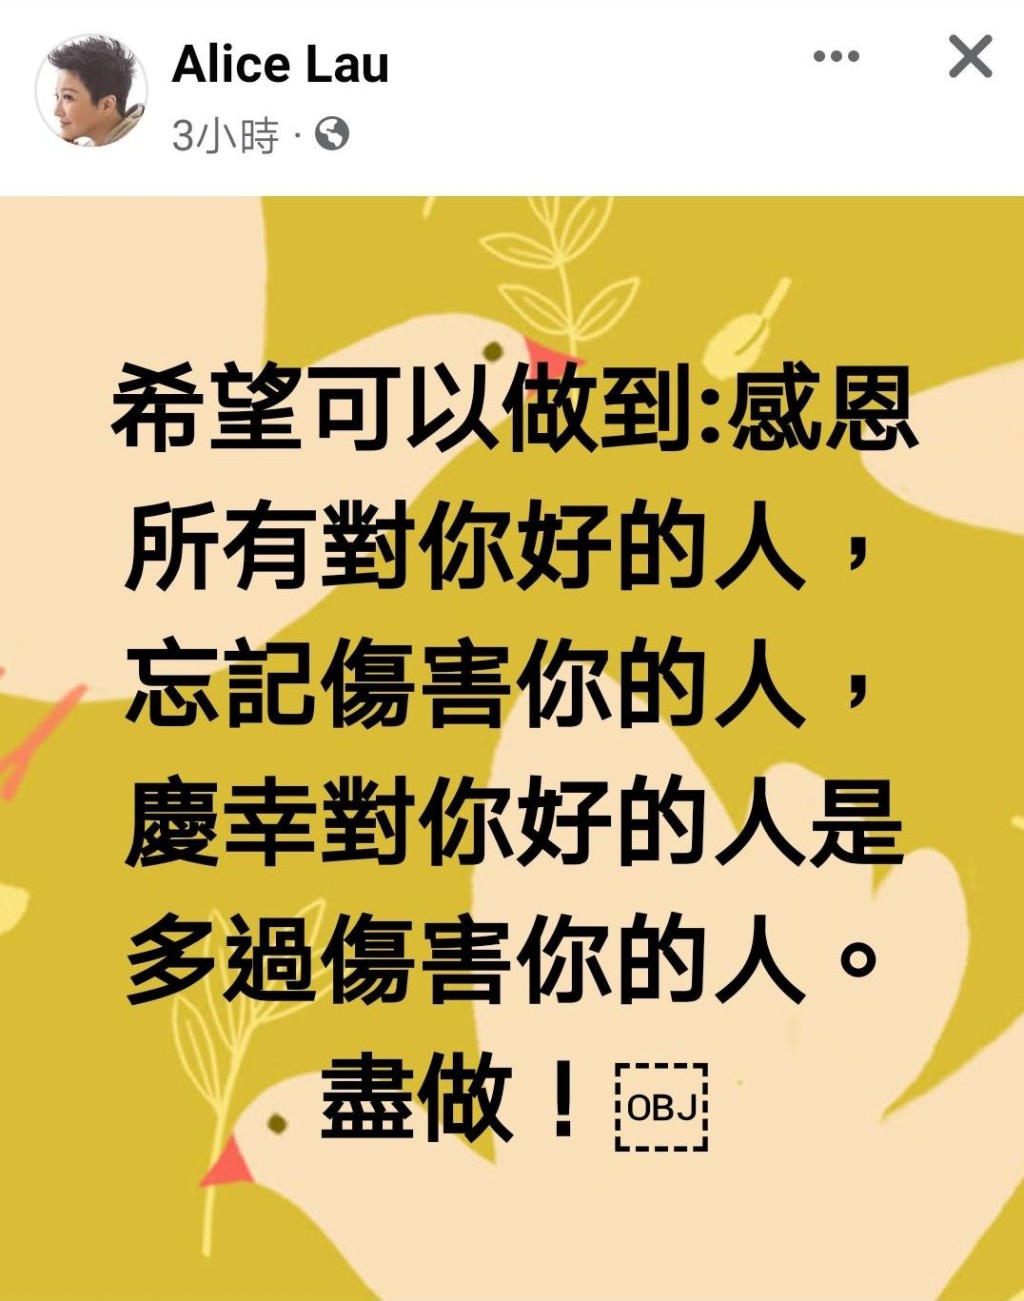 劉雅麗喺FB發表「感恩論」。